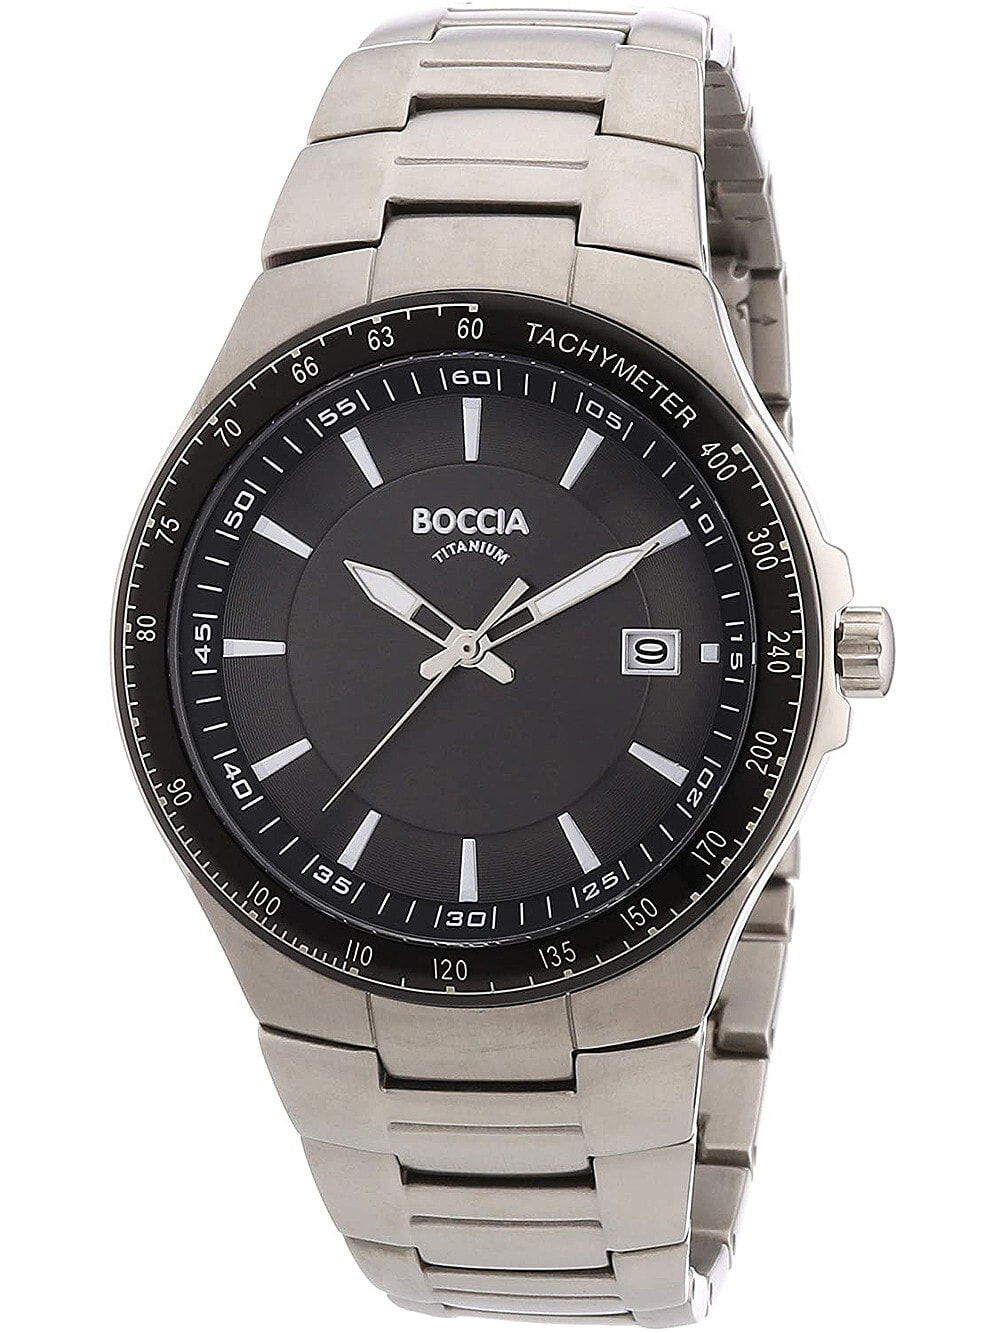 Мужские наручные часы с серебряным браслетом Boccia 3627-01 mens watch titanium 42mm 10ATM